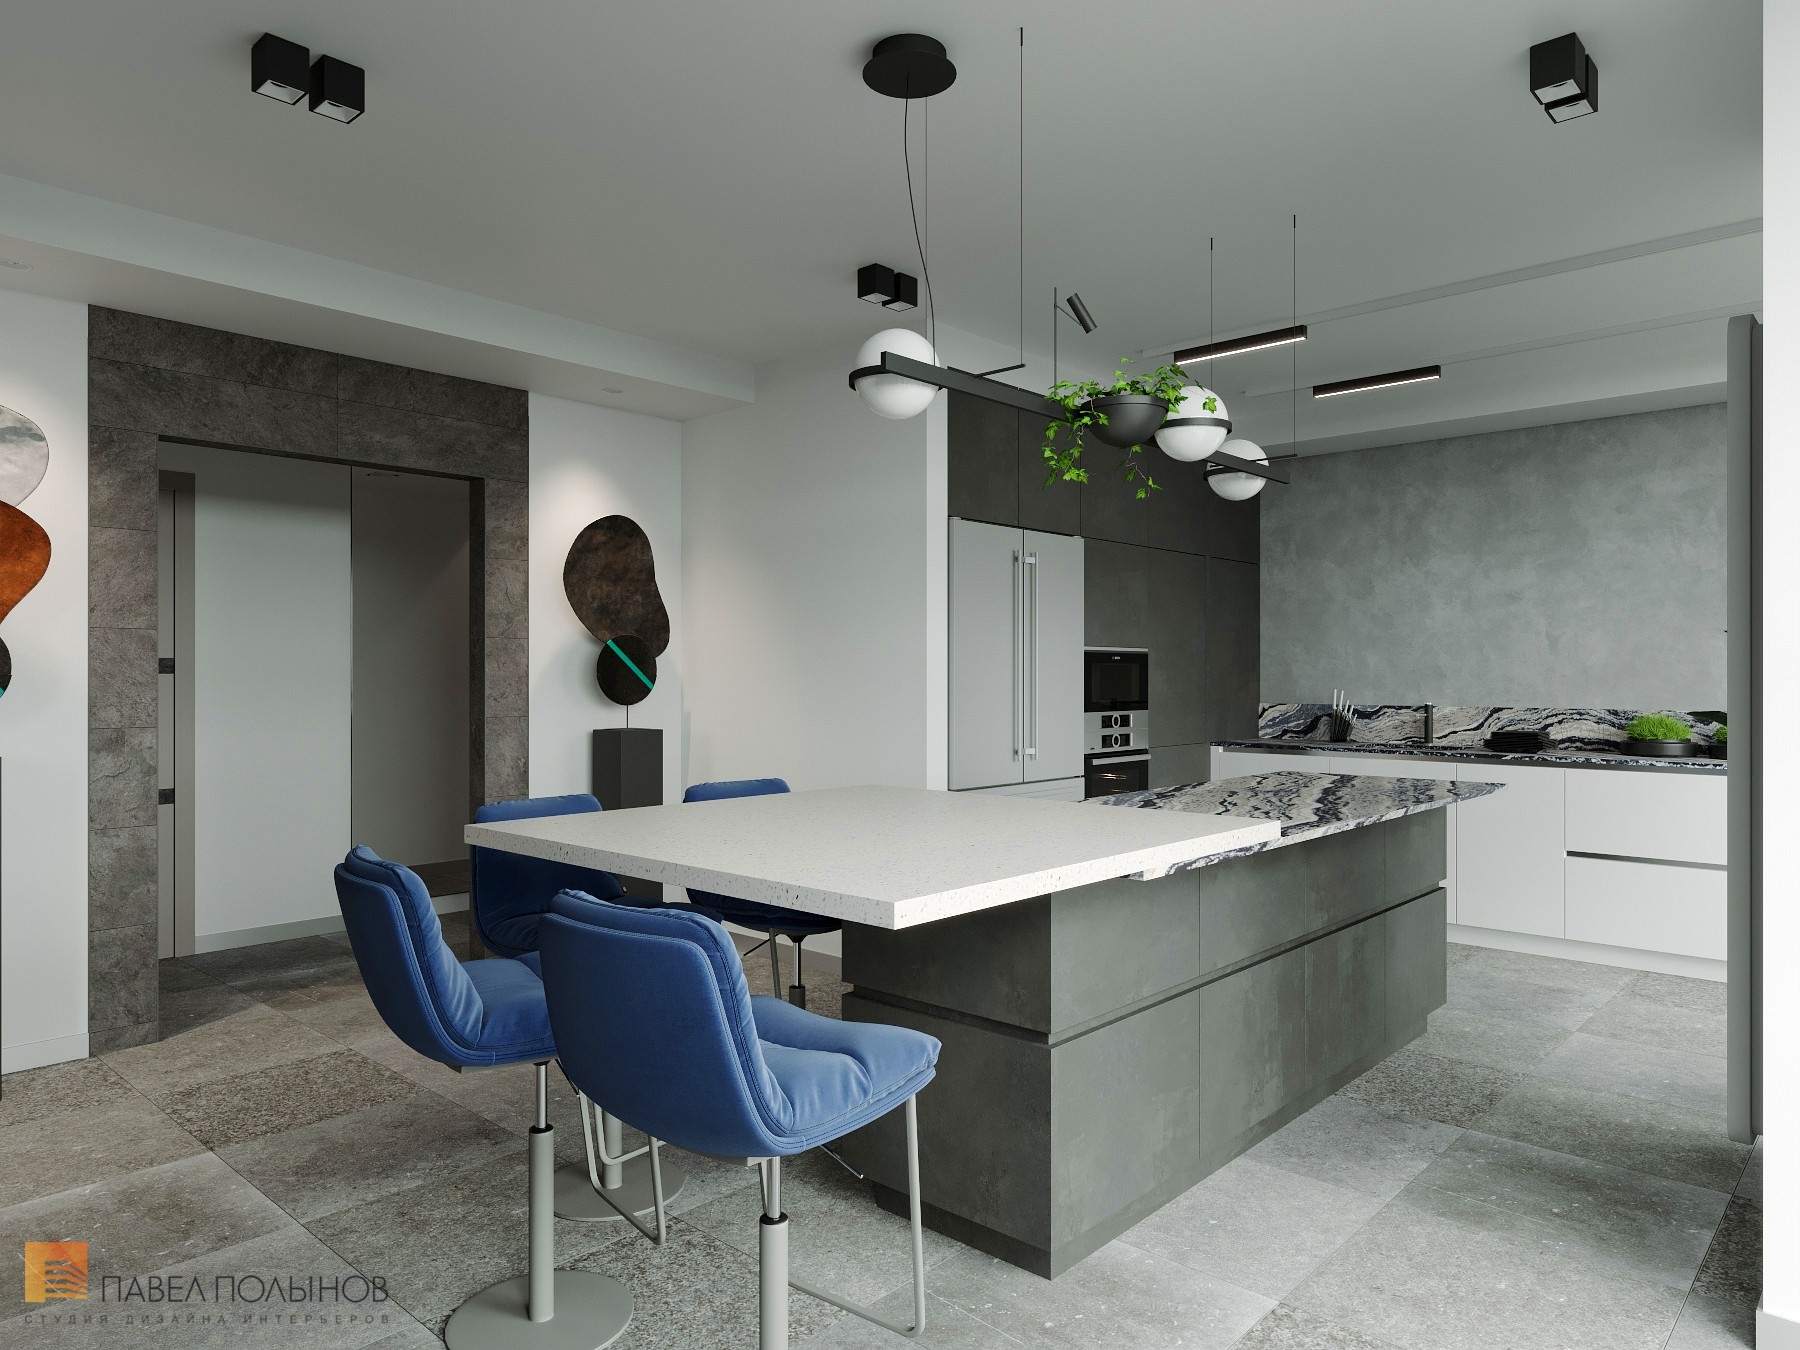 Фото дизайн интерьера кухни из проекта «Дизайн интерьер квартиры в ЖК «Кремлевские звезды», современный стиль, 133 кв.м.»